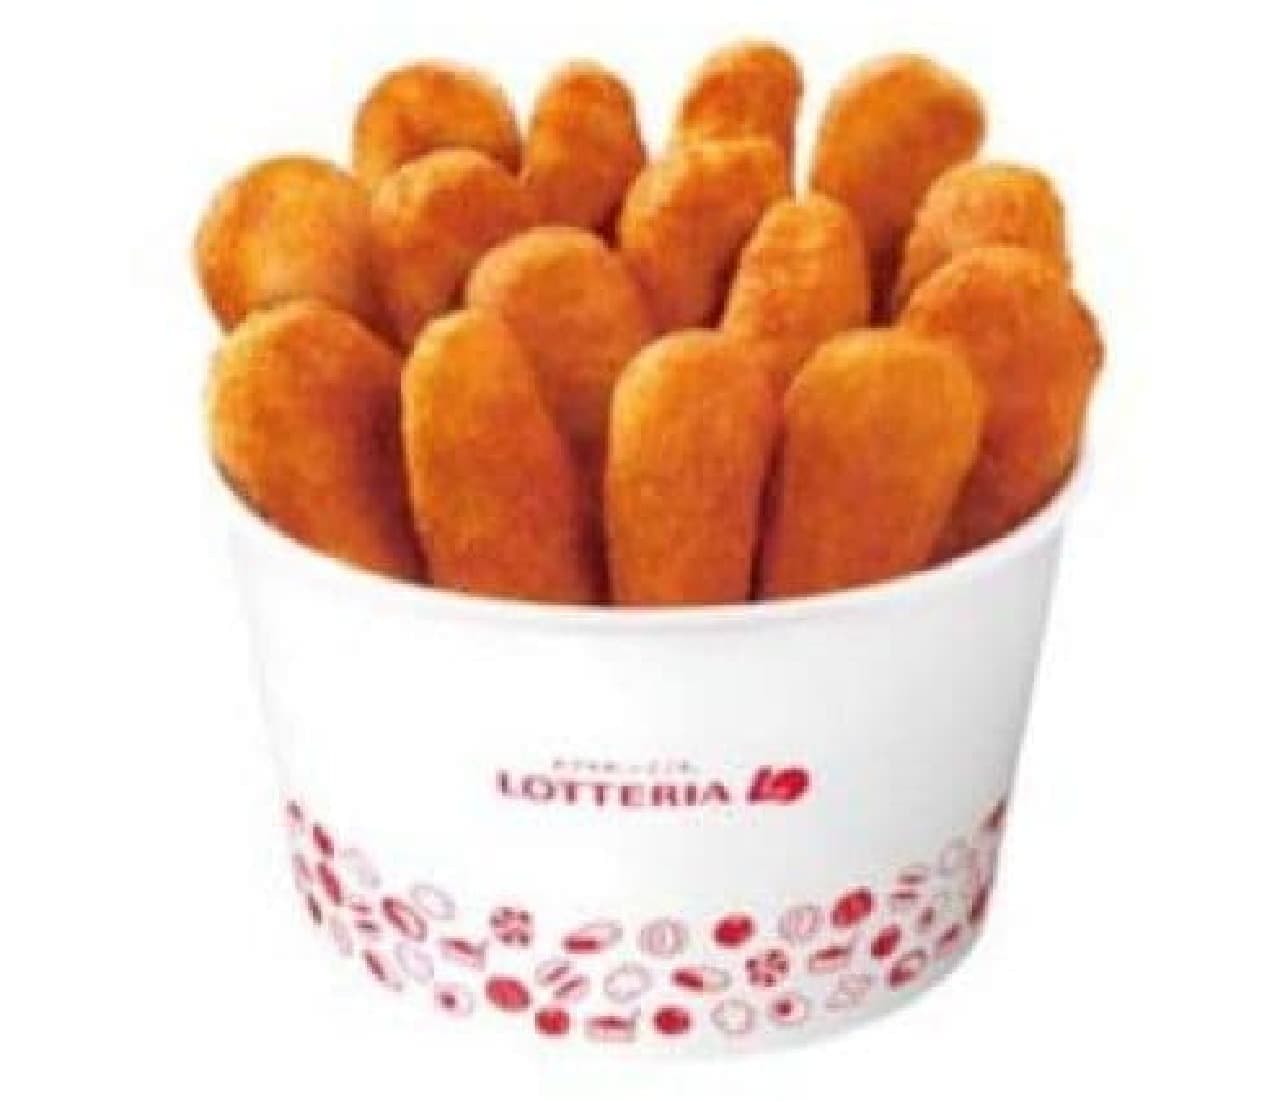 Lotteria: "Bucket Chicken Kara-Aghetto"